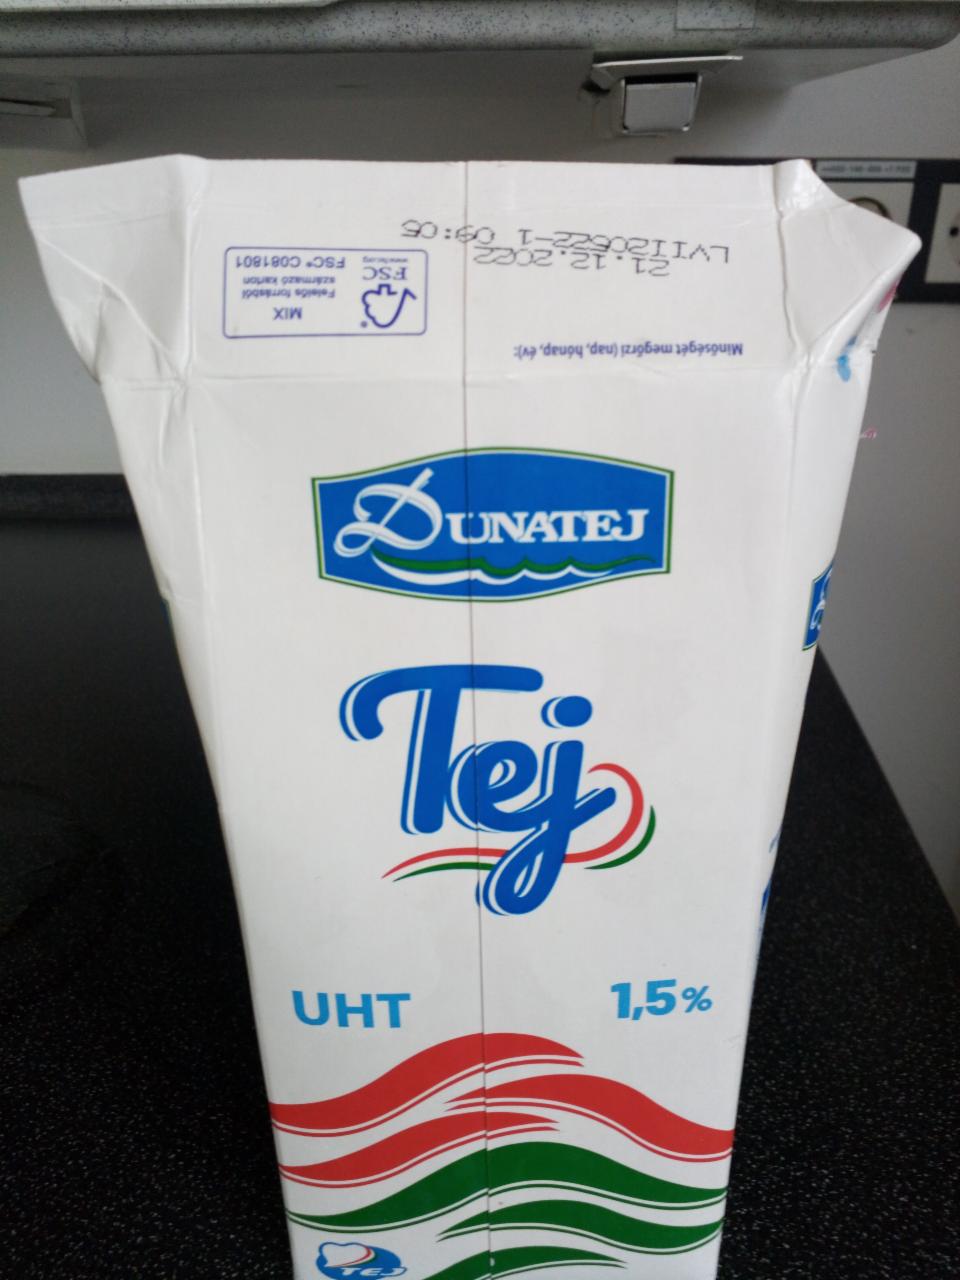 Képek - Dunatej UHT zsírszegény tej 1,5% 1 l